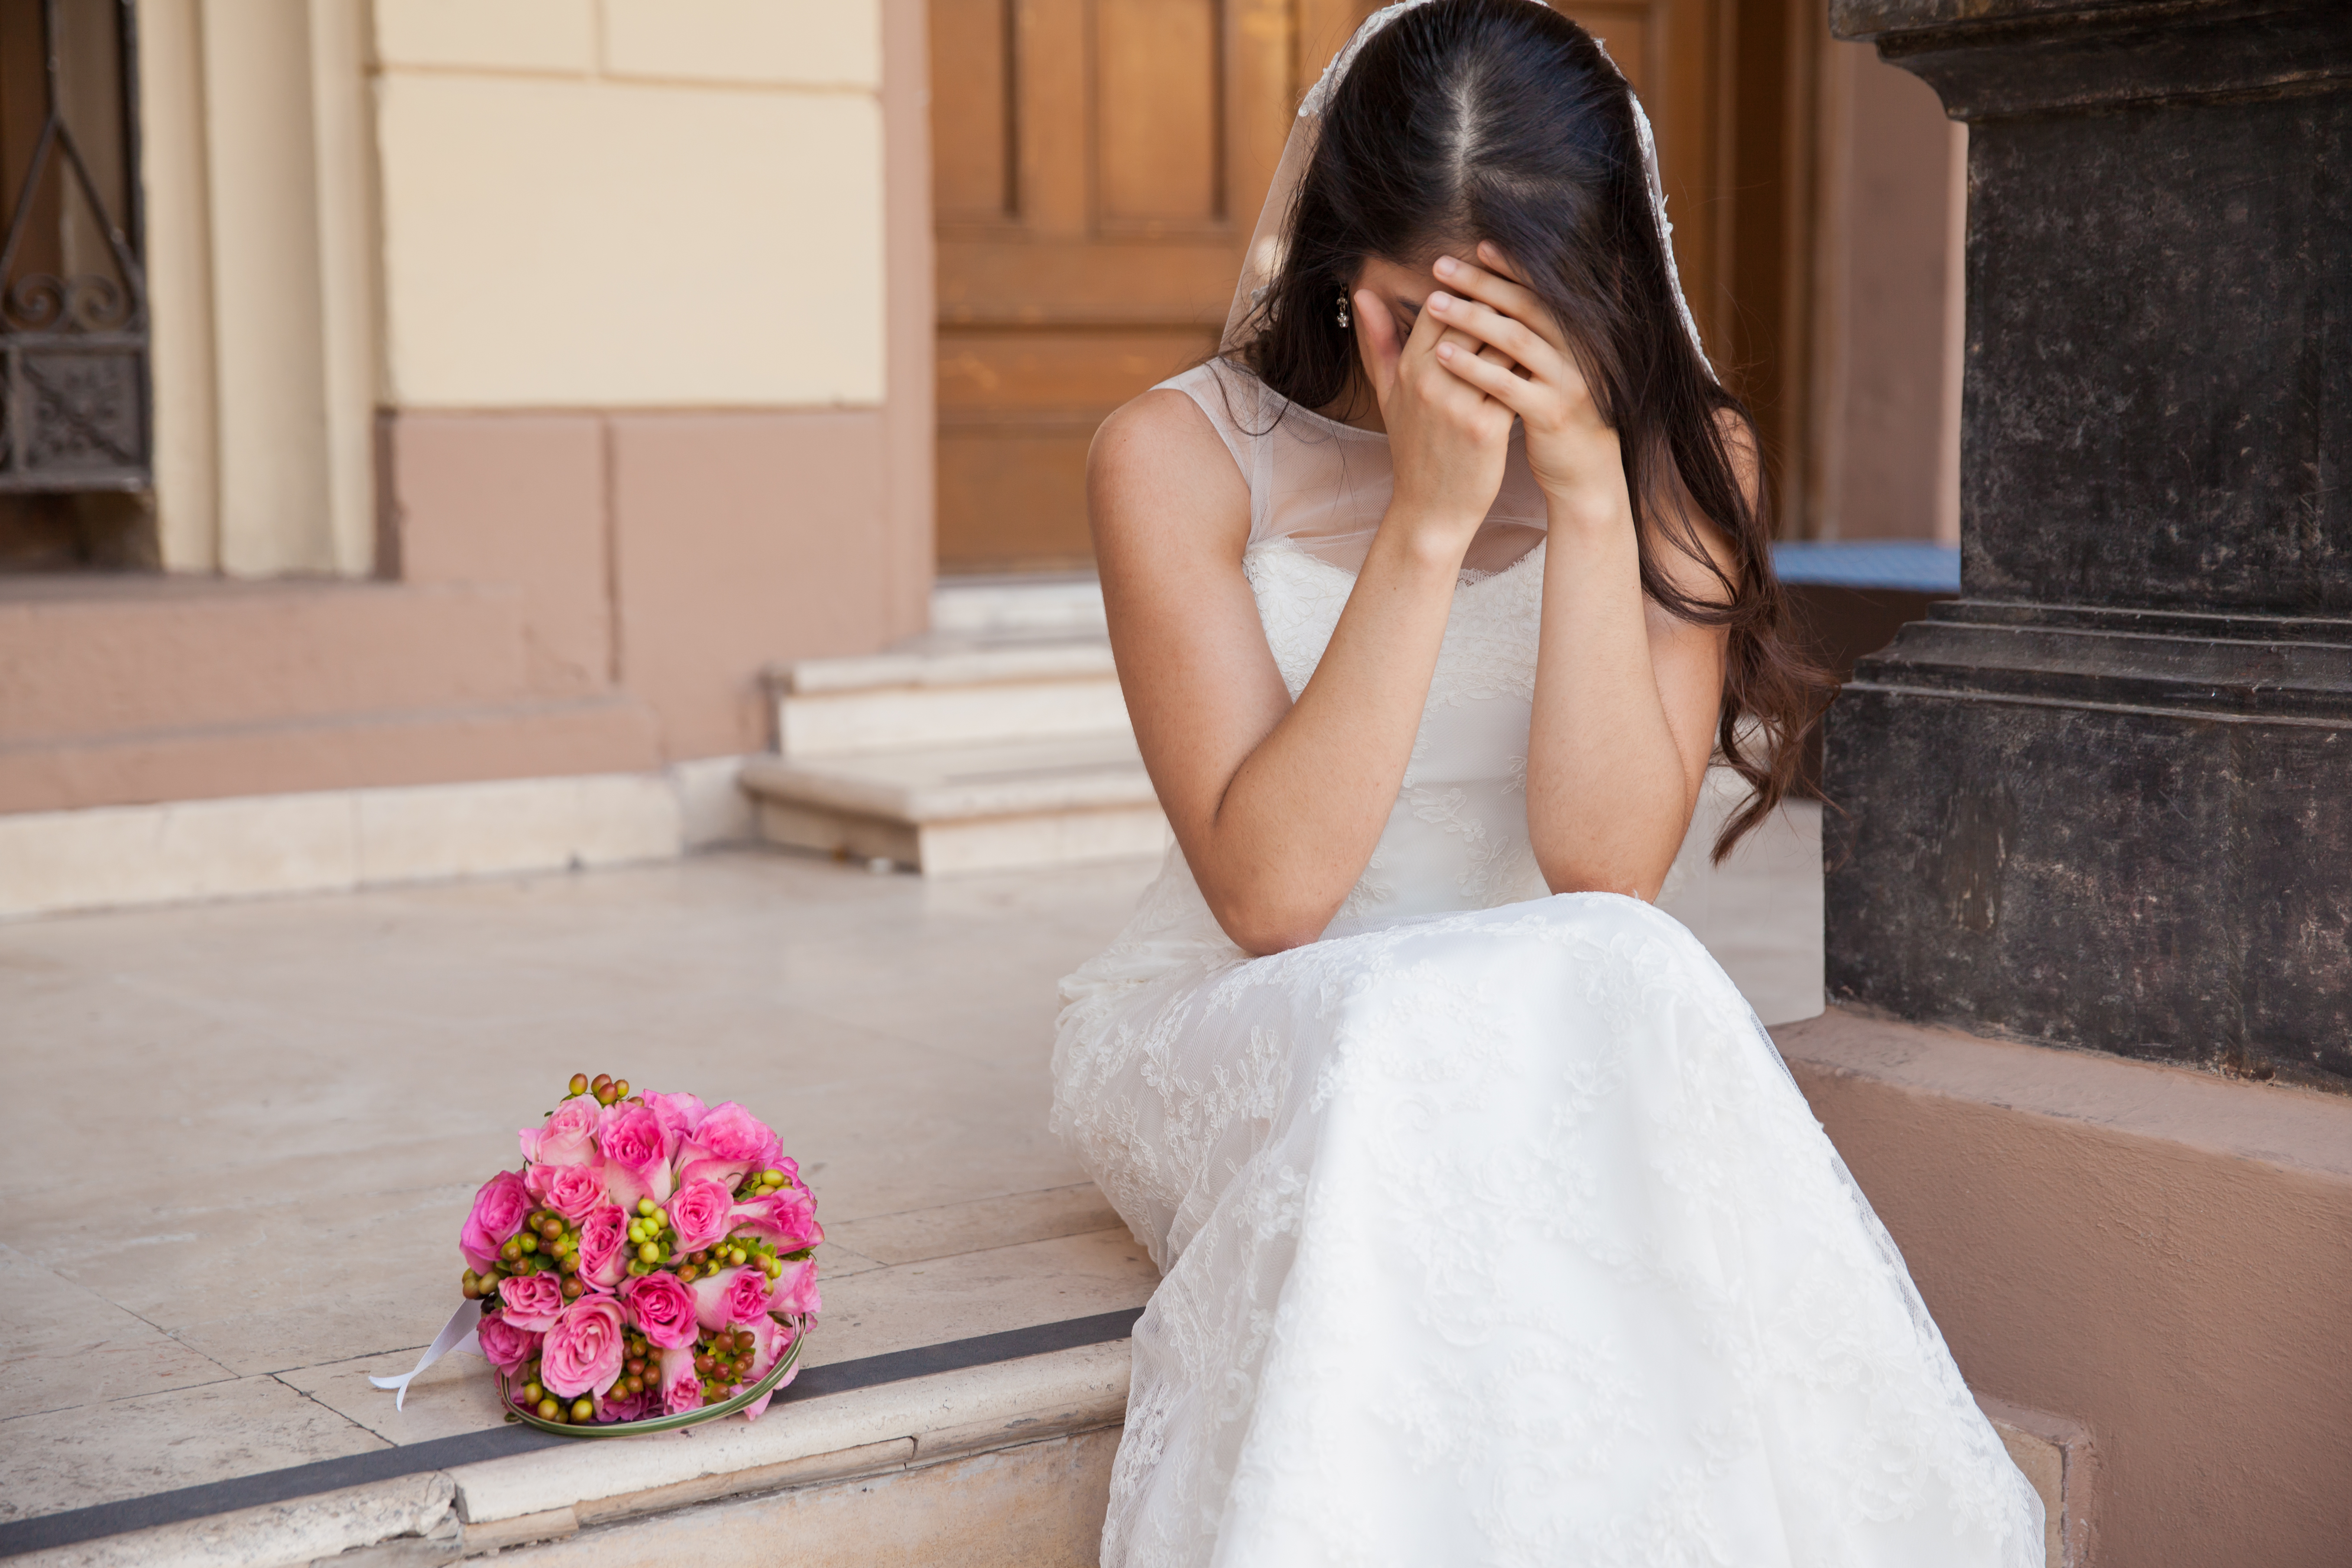 Una novia llorando en el exterior de una iglesia | Fuente: Shutterstock